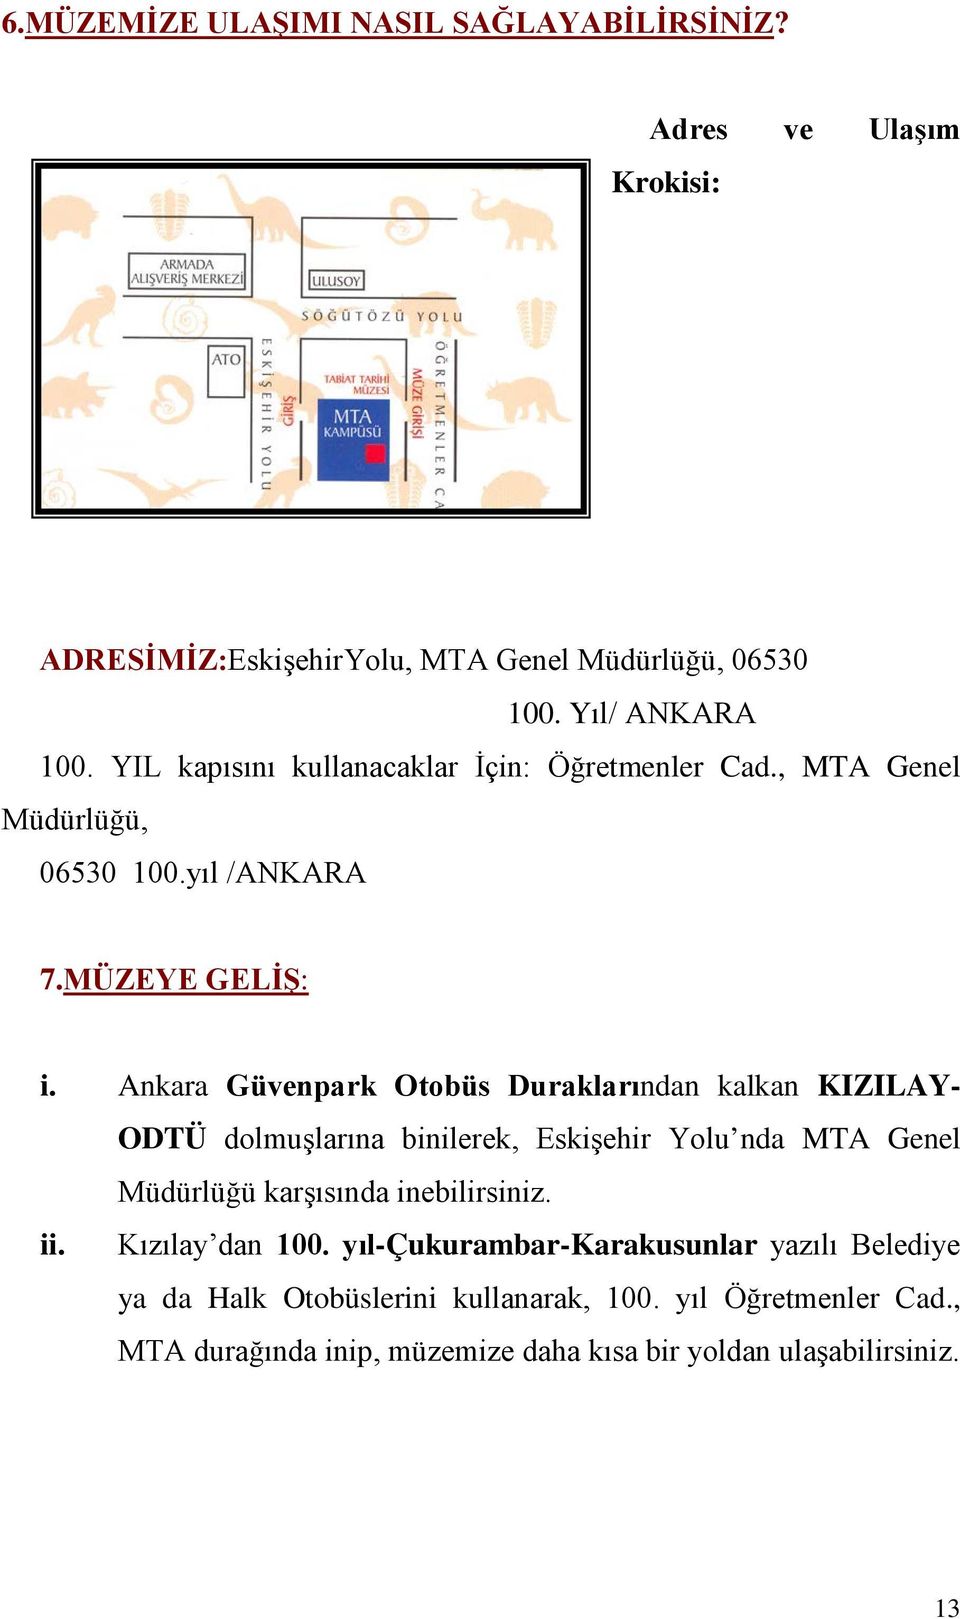 Ankara Güvenpark Otobüs Duraklarından kalkan KIZILAY- ODTÜ dolmuşlarına binilerek, Eskişehir Yolu nda MTA Genel Müdürlüğü karşısında inebilirsiniz. ii.